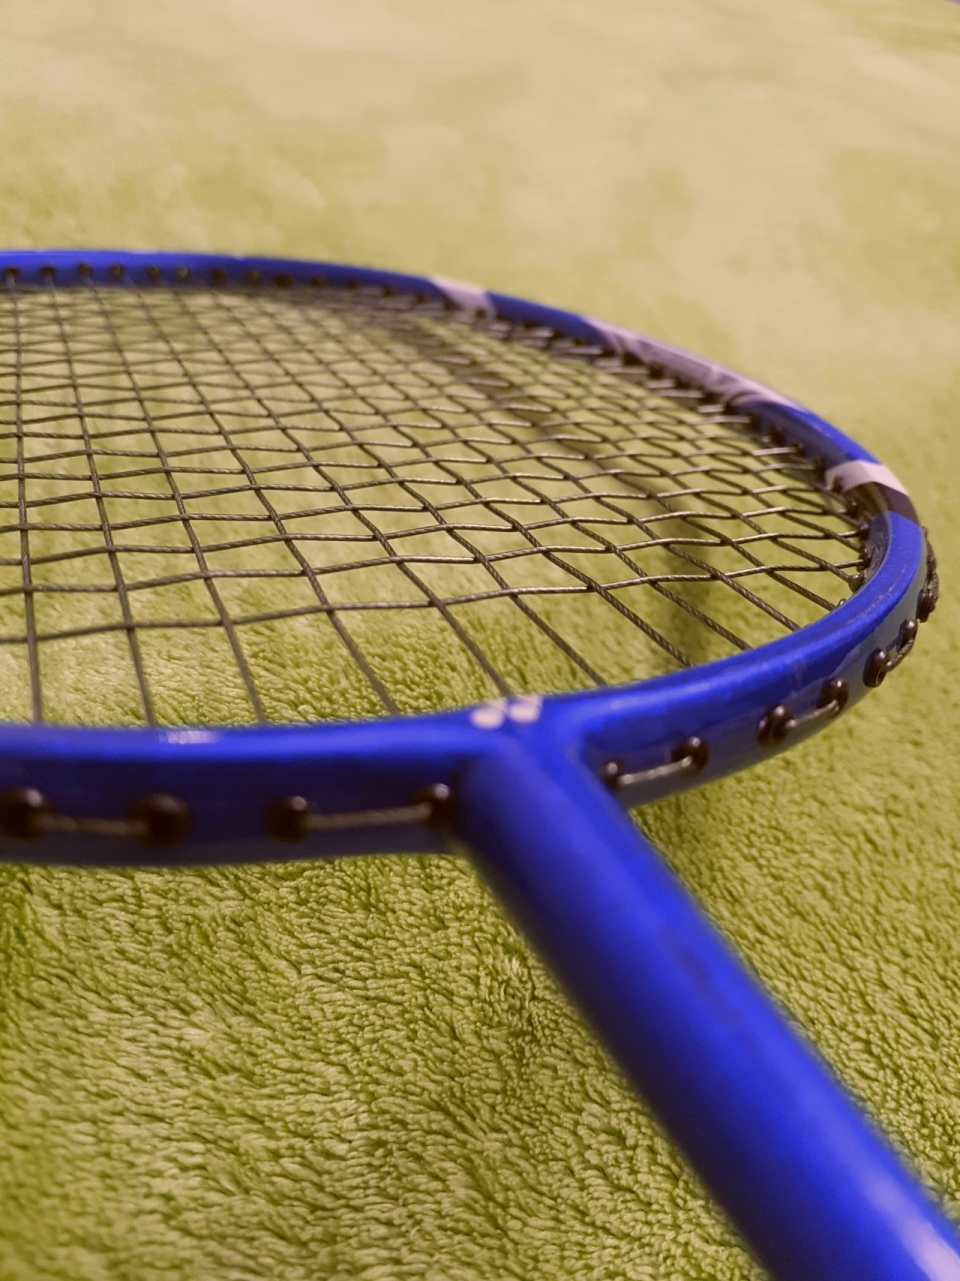 室内绿色毛毯上蓝色边框专业运动网球拍